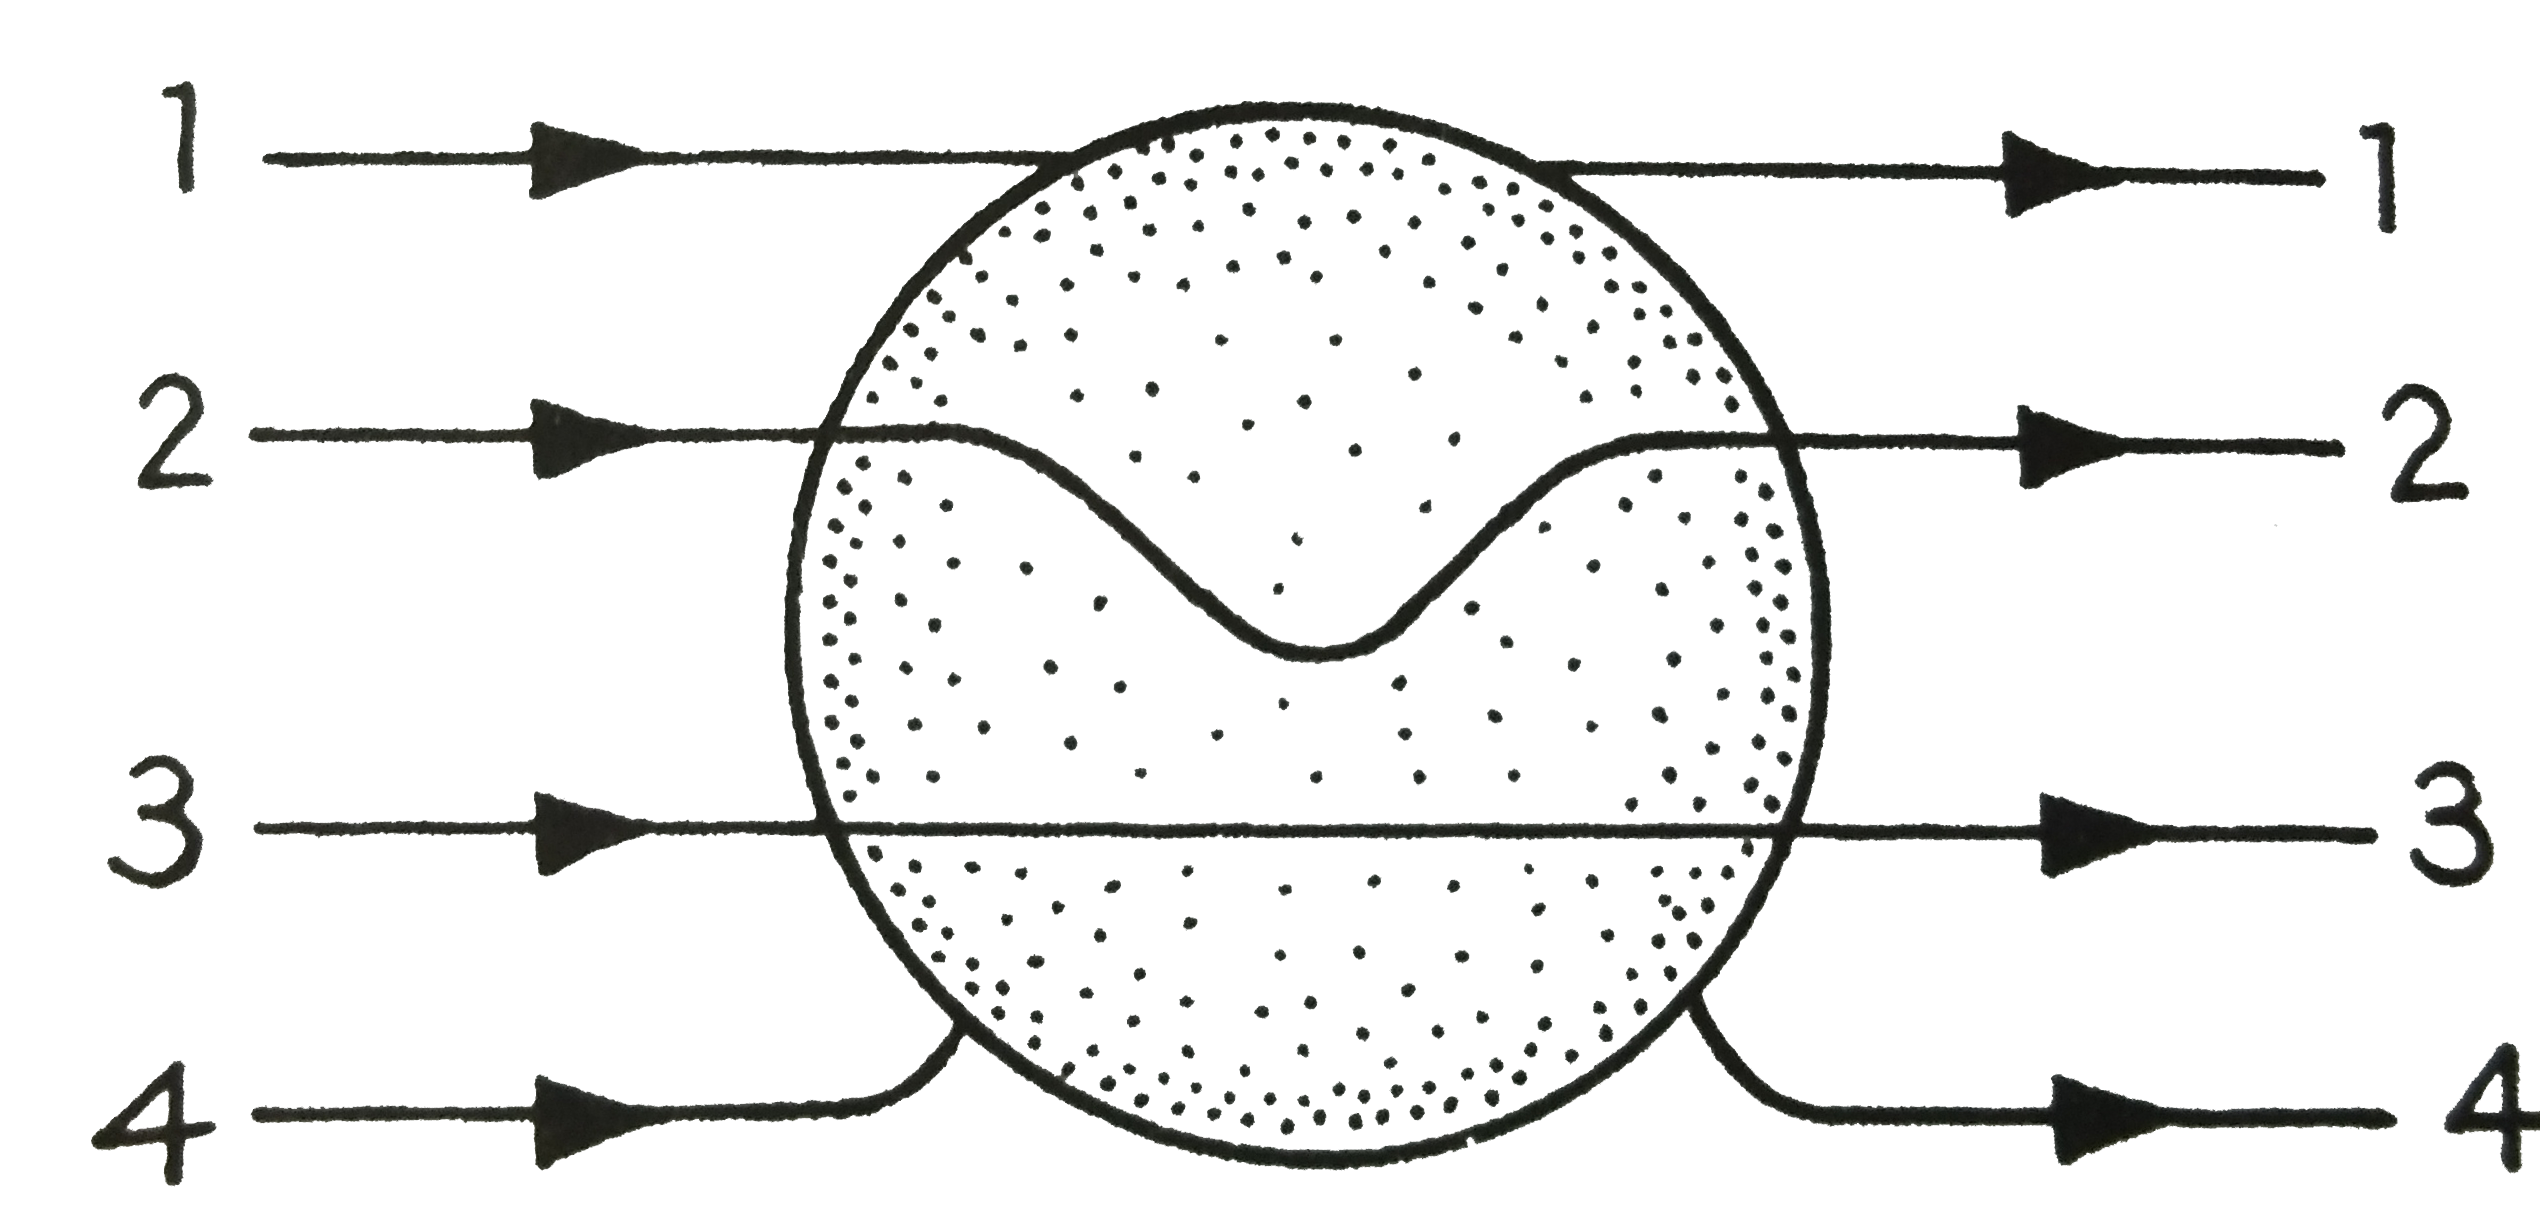 धातु का बना एक ठोस गोले एकसमान विधुत क्षेत्र में रेखा है चित्र में दिखाई गई बल रेखाओ में से सही बल रेखा